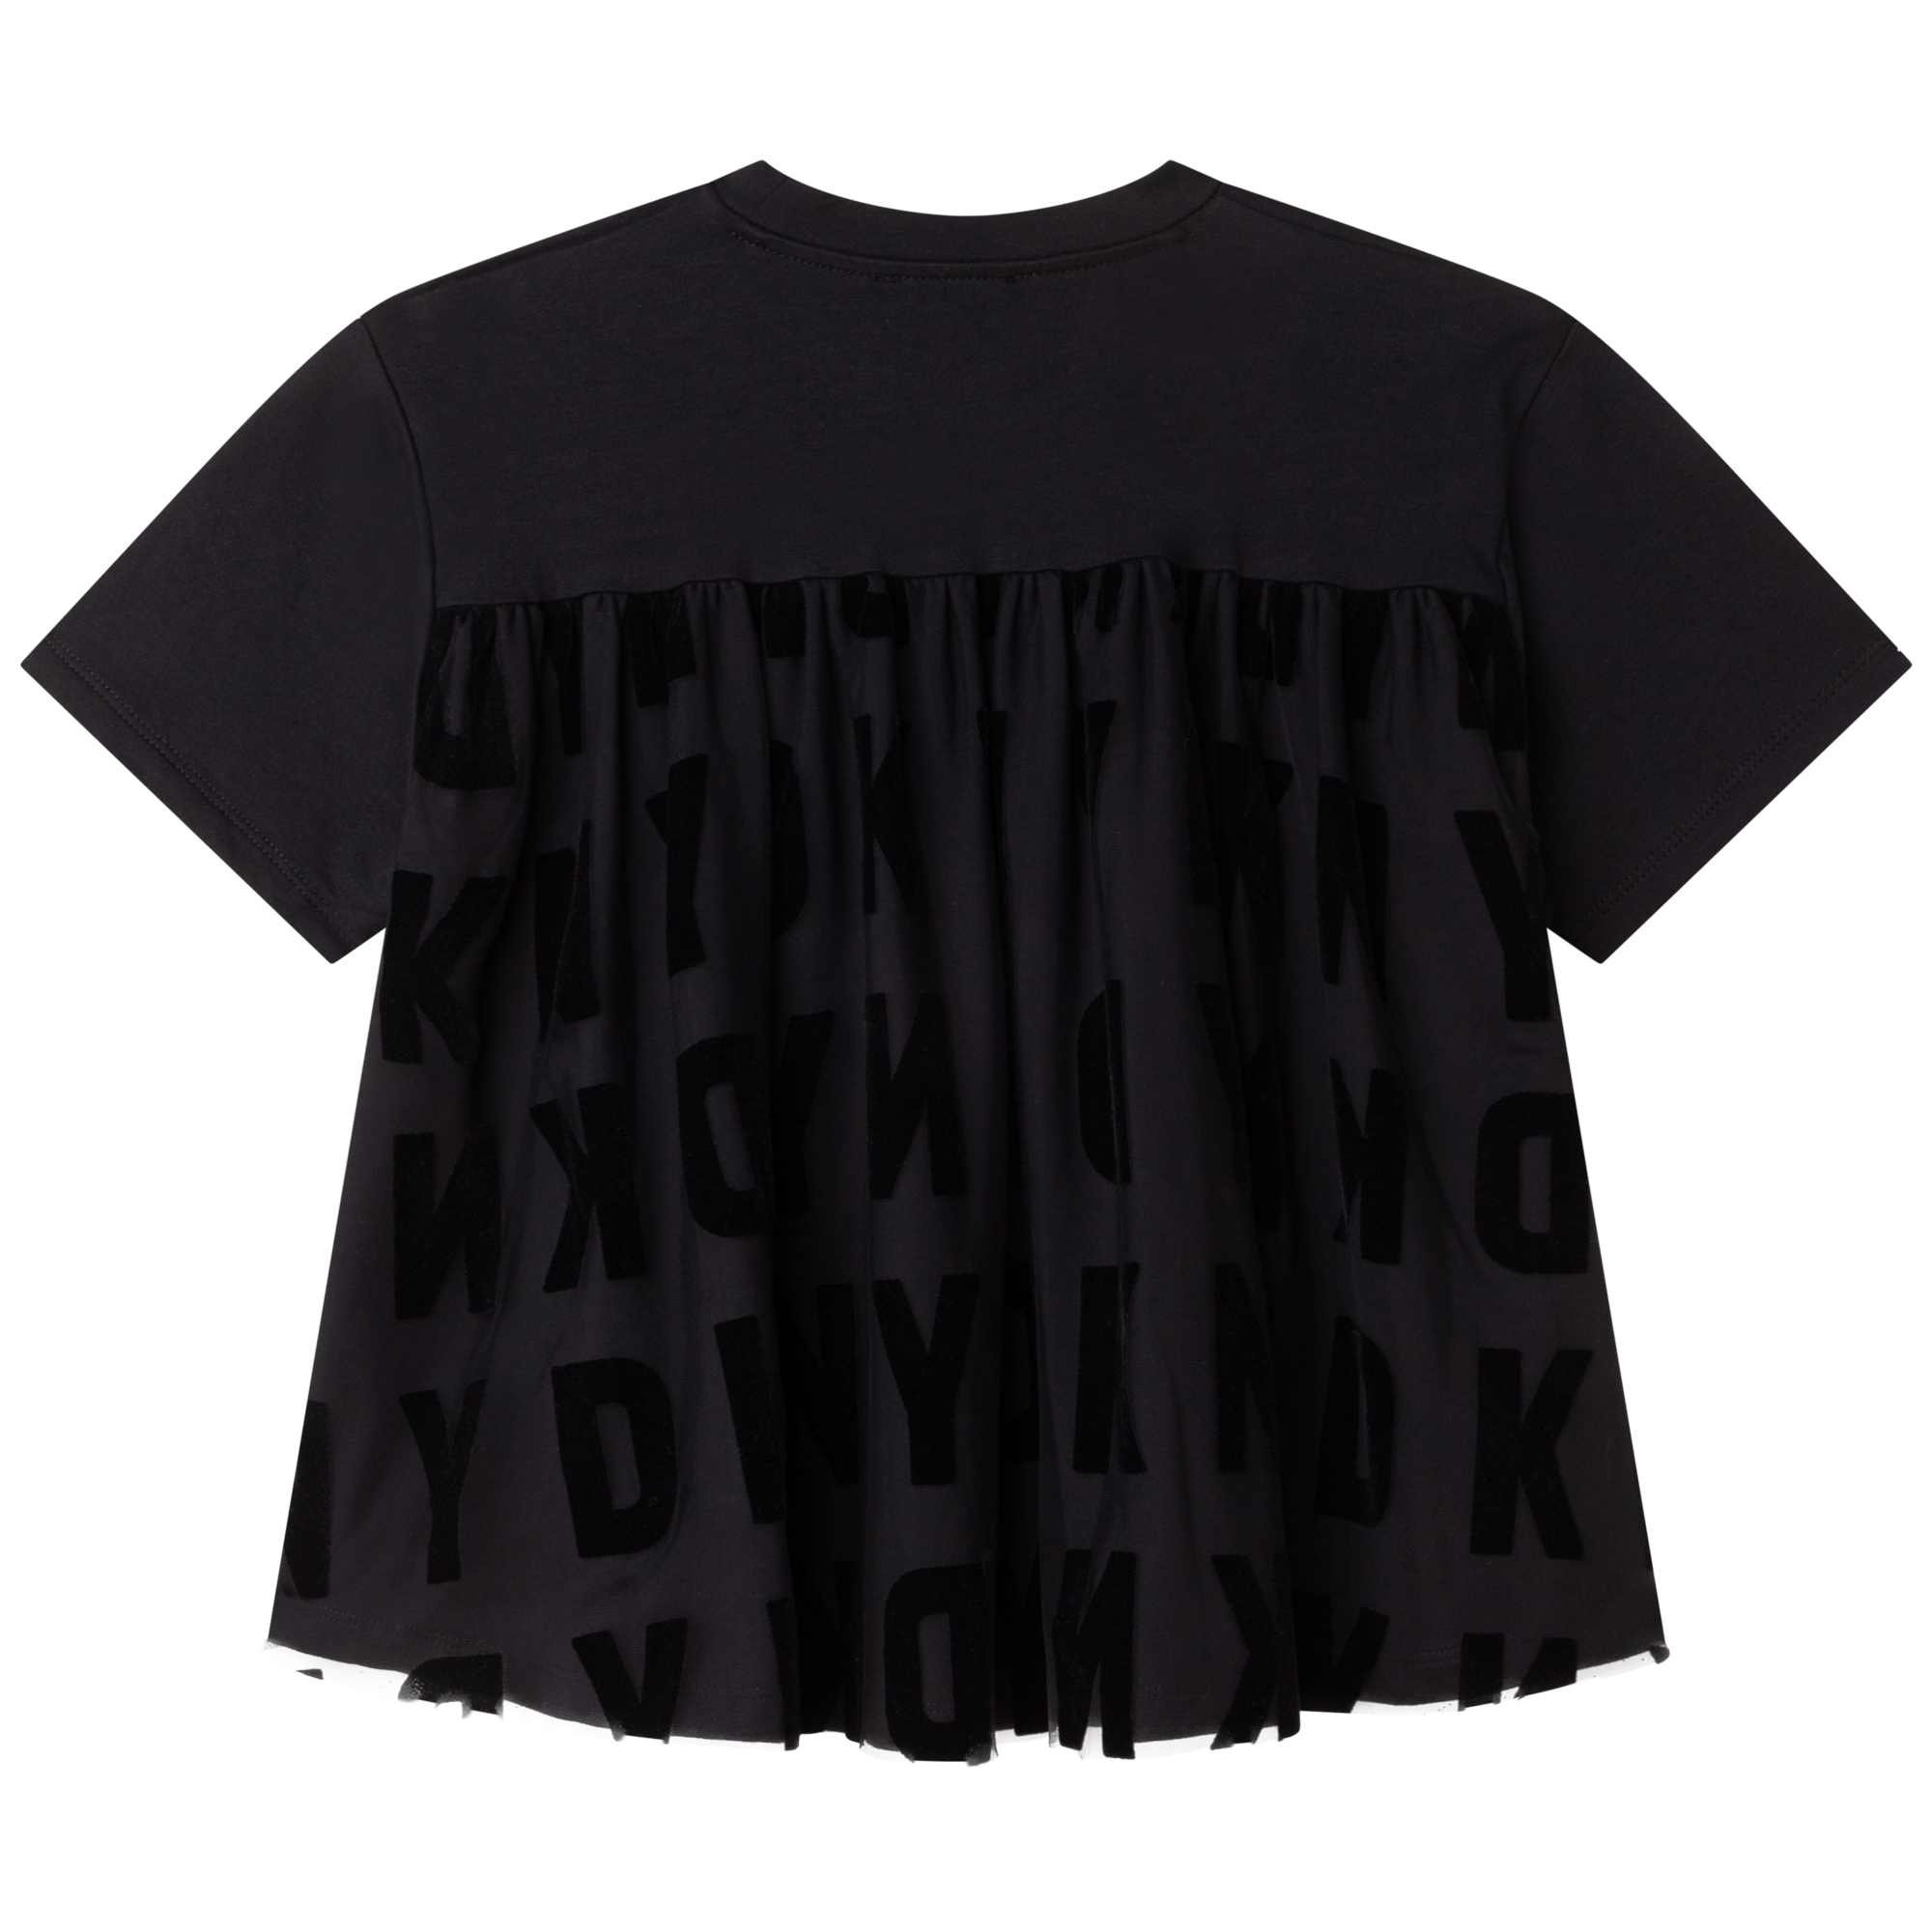 Plain bi-material T-shirt DKNY for GIRL